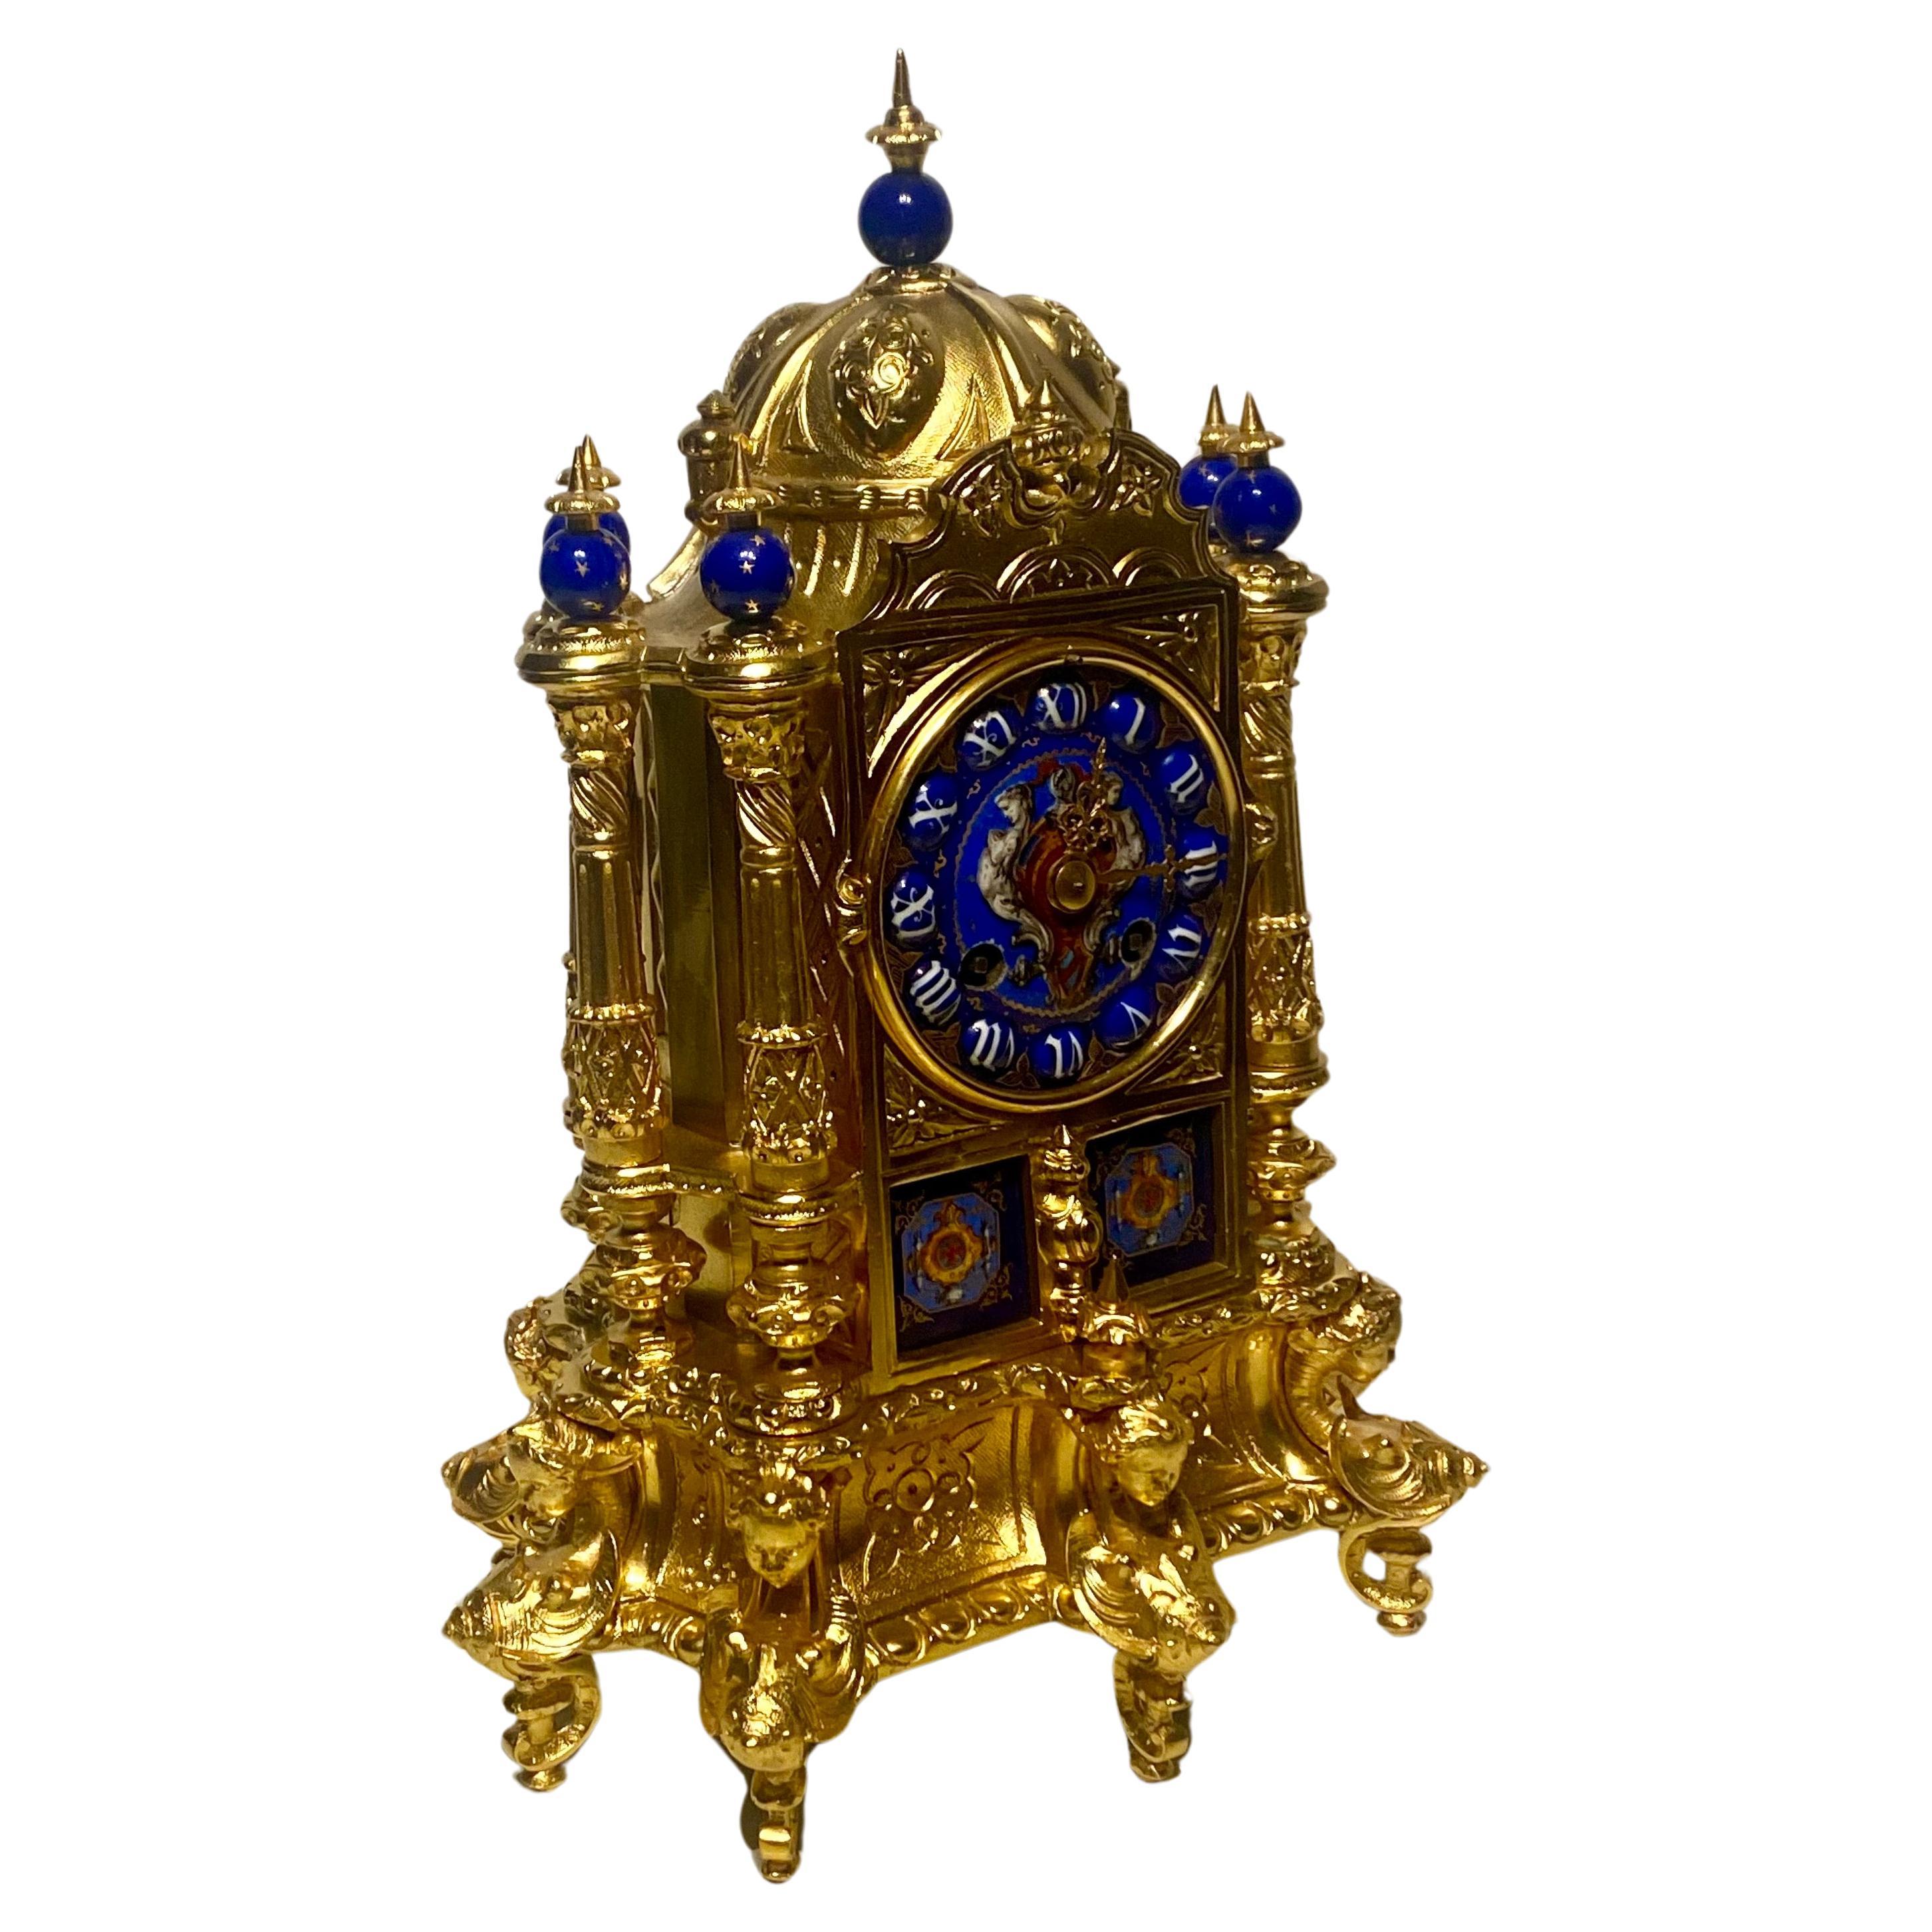 Renaissance-Stil vergoldete Bronze und Emaille Kaminsimsuhr
Französisch, Ende 19. Jahrhundert
Diese exquisite Kaminsimsuhr ist im eigenwilligen Renaissance-Revival-Stil gefertigt, der im späten 19. Jahrhundert seine größte Ausprägung fand. Die Uhr